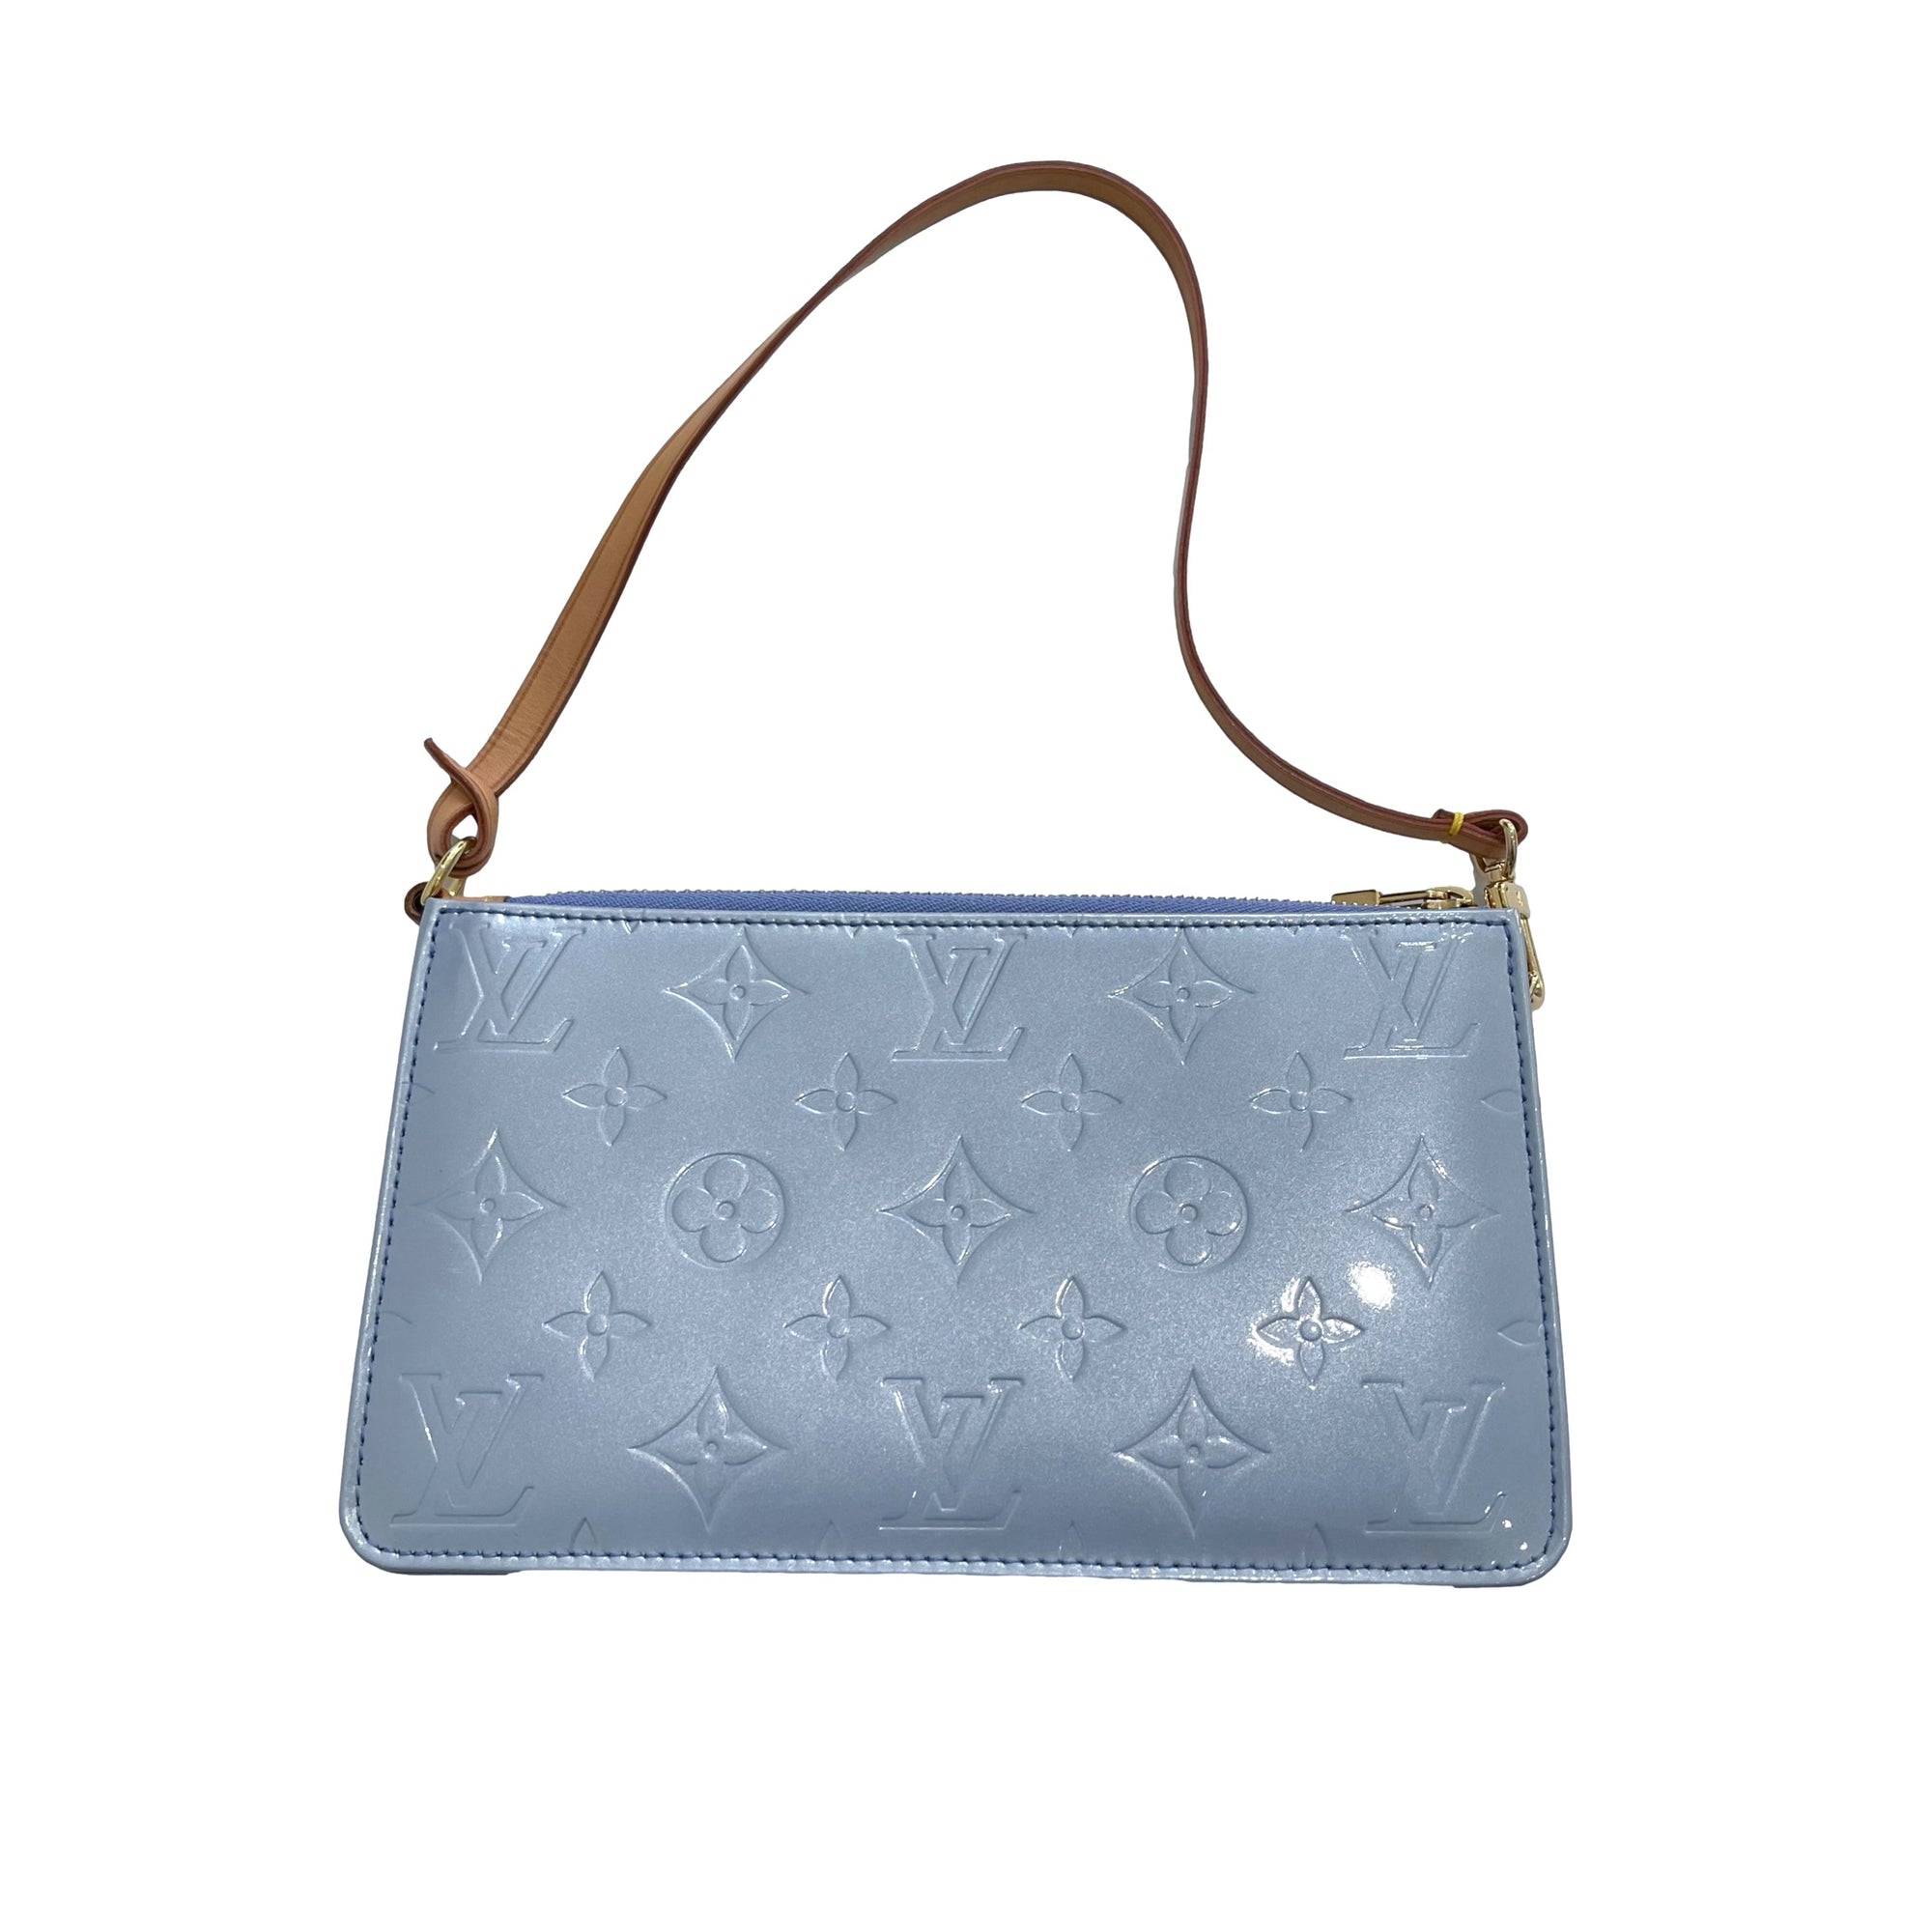 Louis Vuitton, Bags, Authentic Louis Vuitton Vernis Crossbody Bag